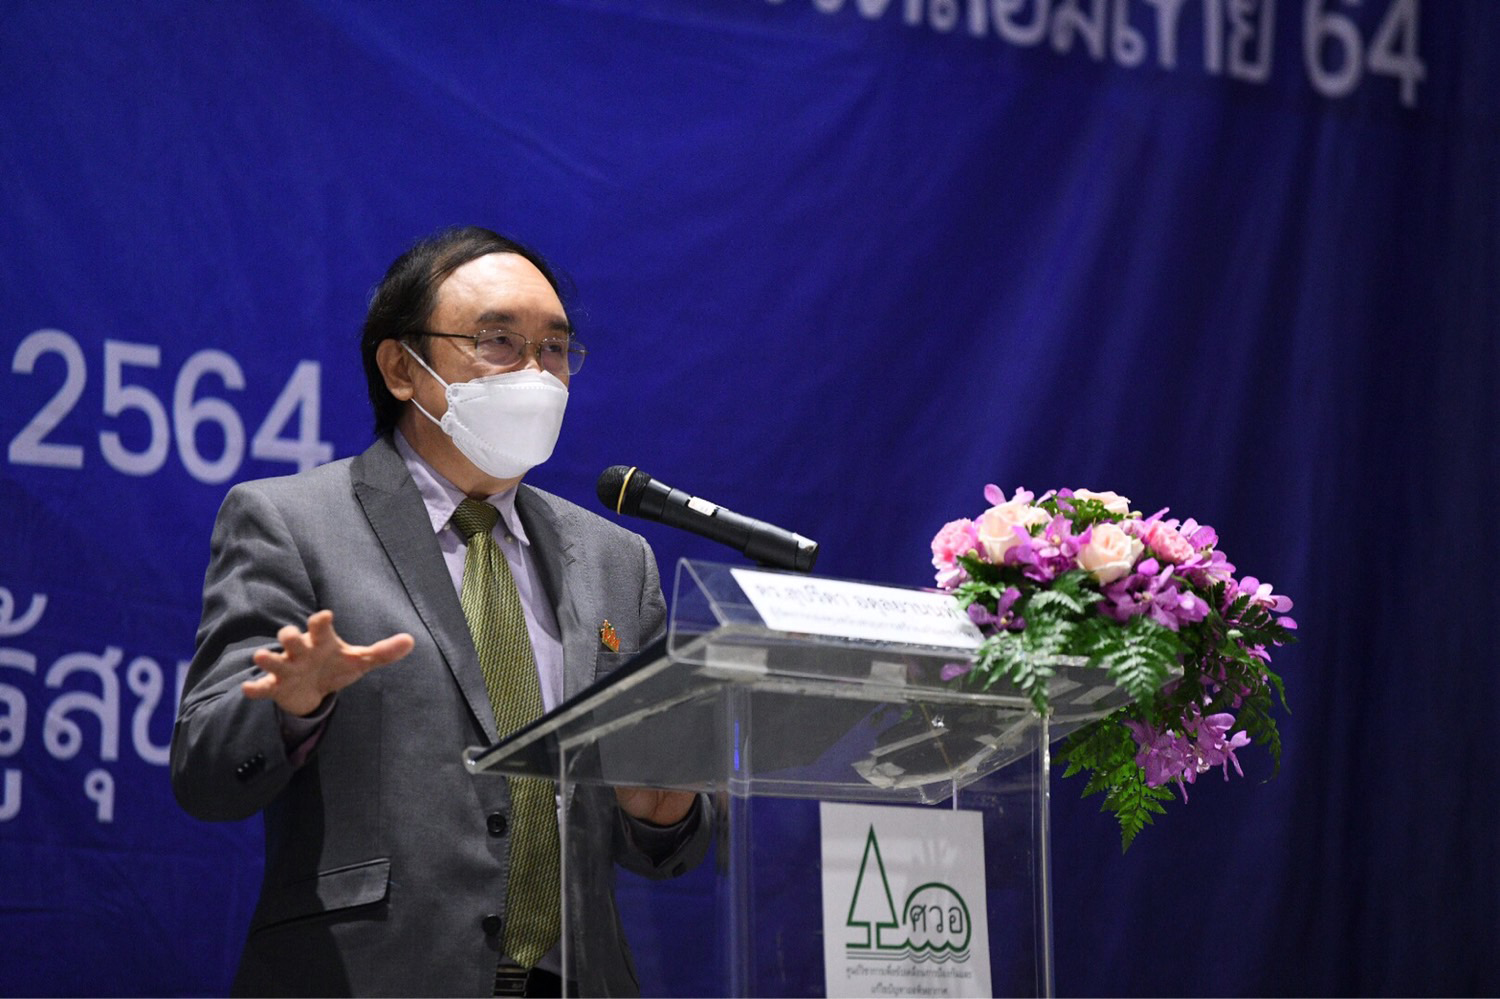 เปิดศูนย์วิชาการขับเคลื่อนป้องกัน-แก้ไขปัญหามลพิษอากาศ พัฒนาองค์ความรู้ มุ่งแก้ปัญหามลพิษทางอากาศ thaihealth